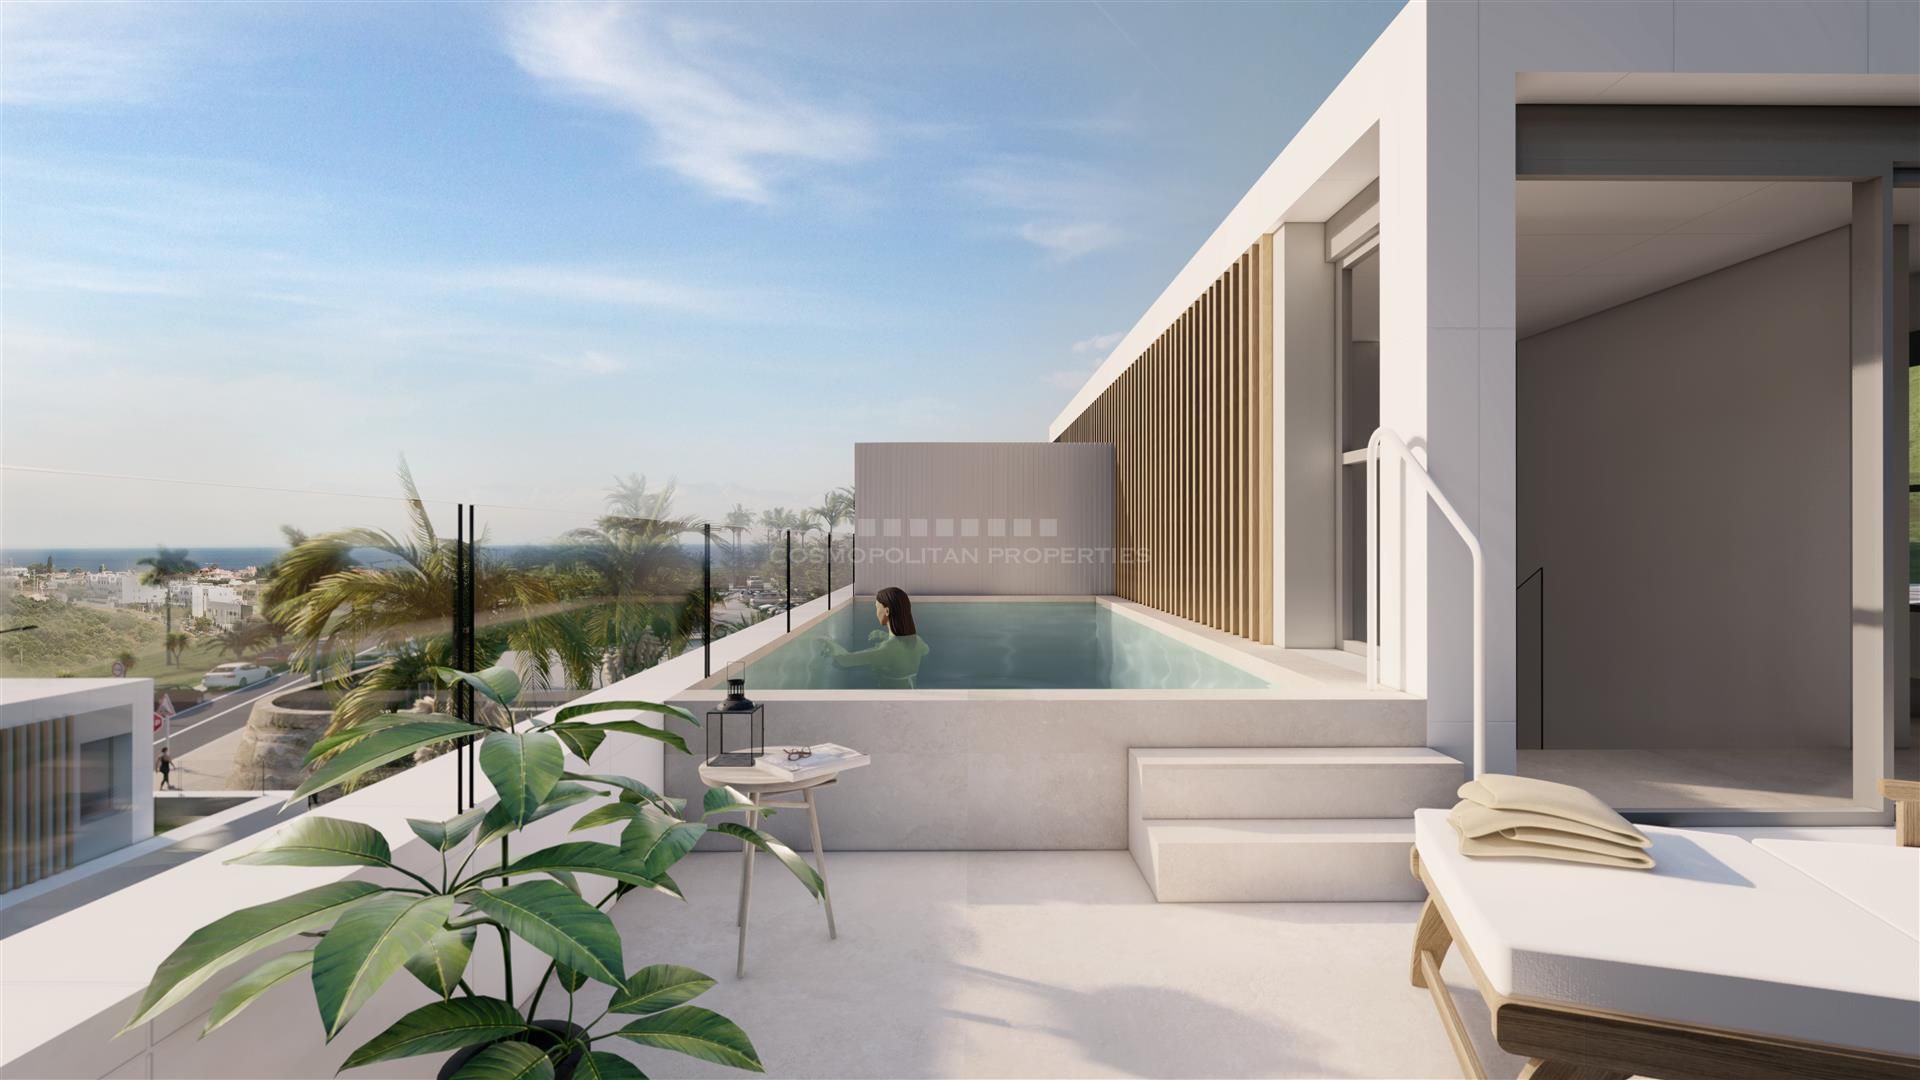 Promotion of ten exclusive villas in the La Resina Golf area, Estepona